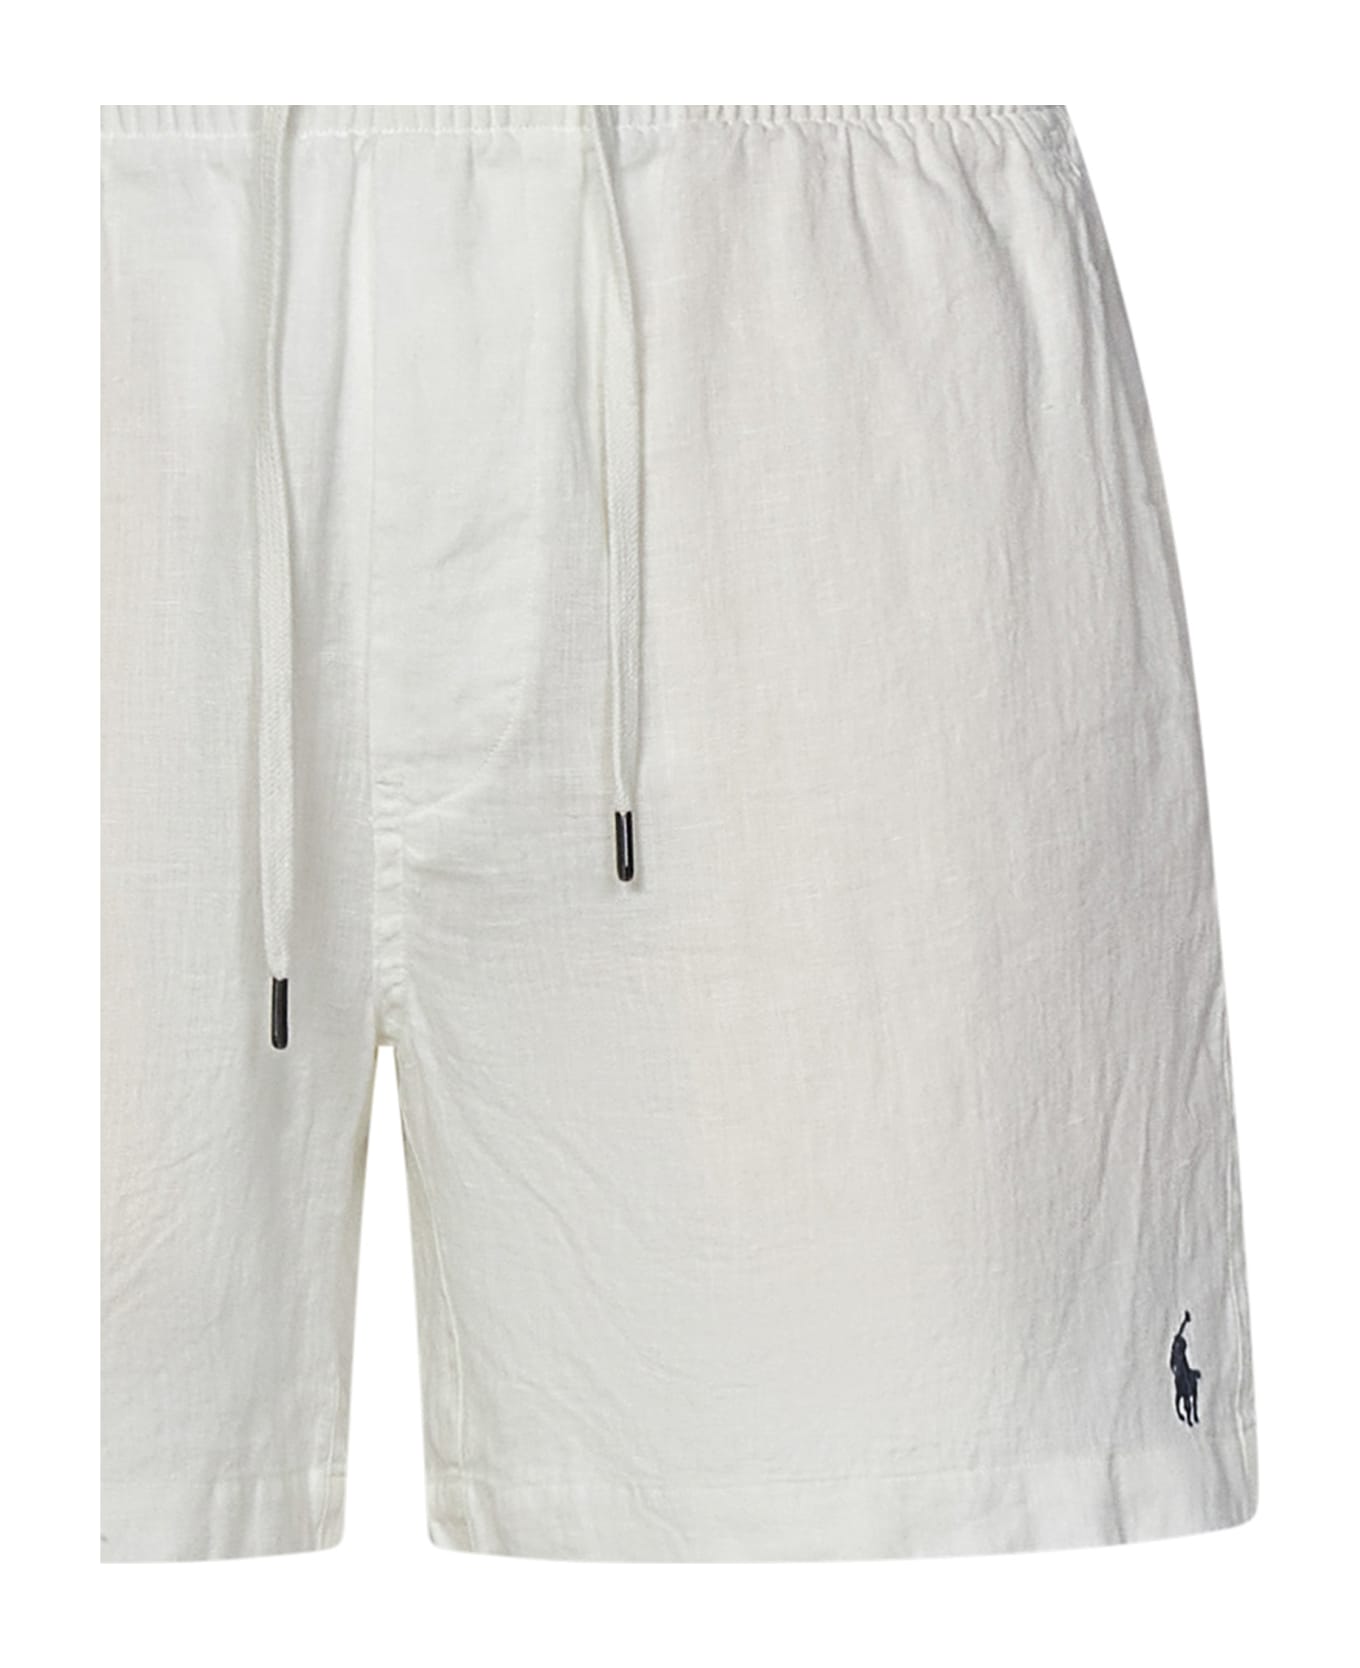 Polo Ralph Lauren Prepster Shorts - White ショートパンツ